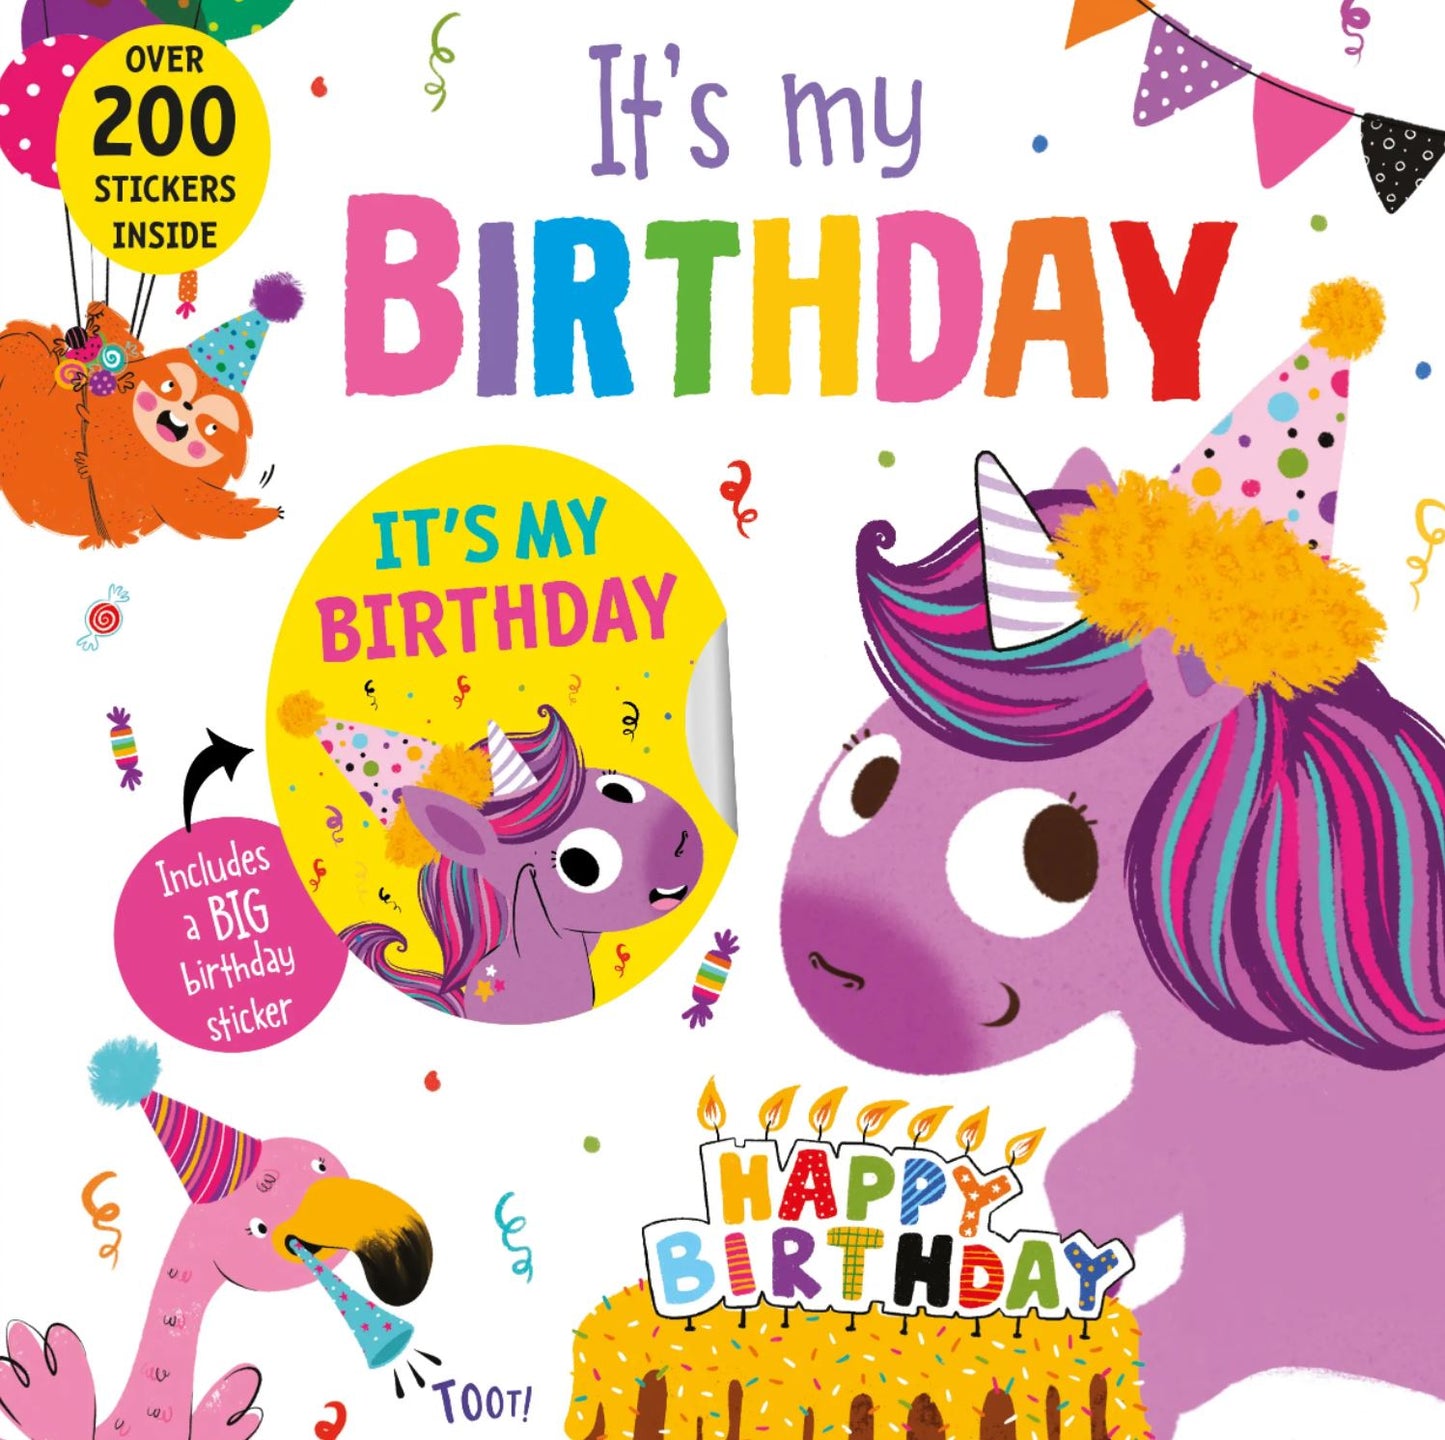 It's My Birthday (Unicorn cover)